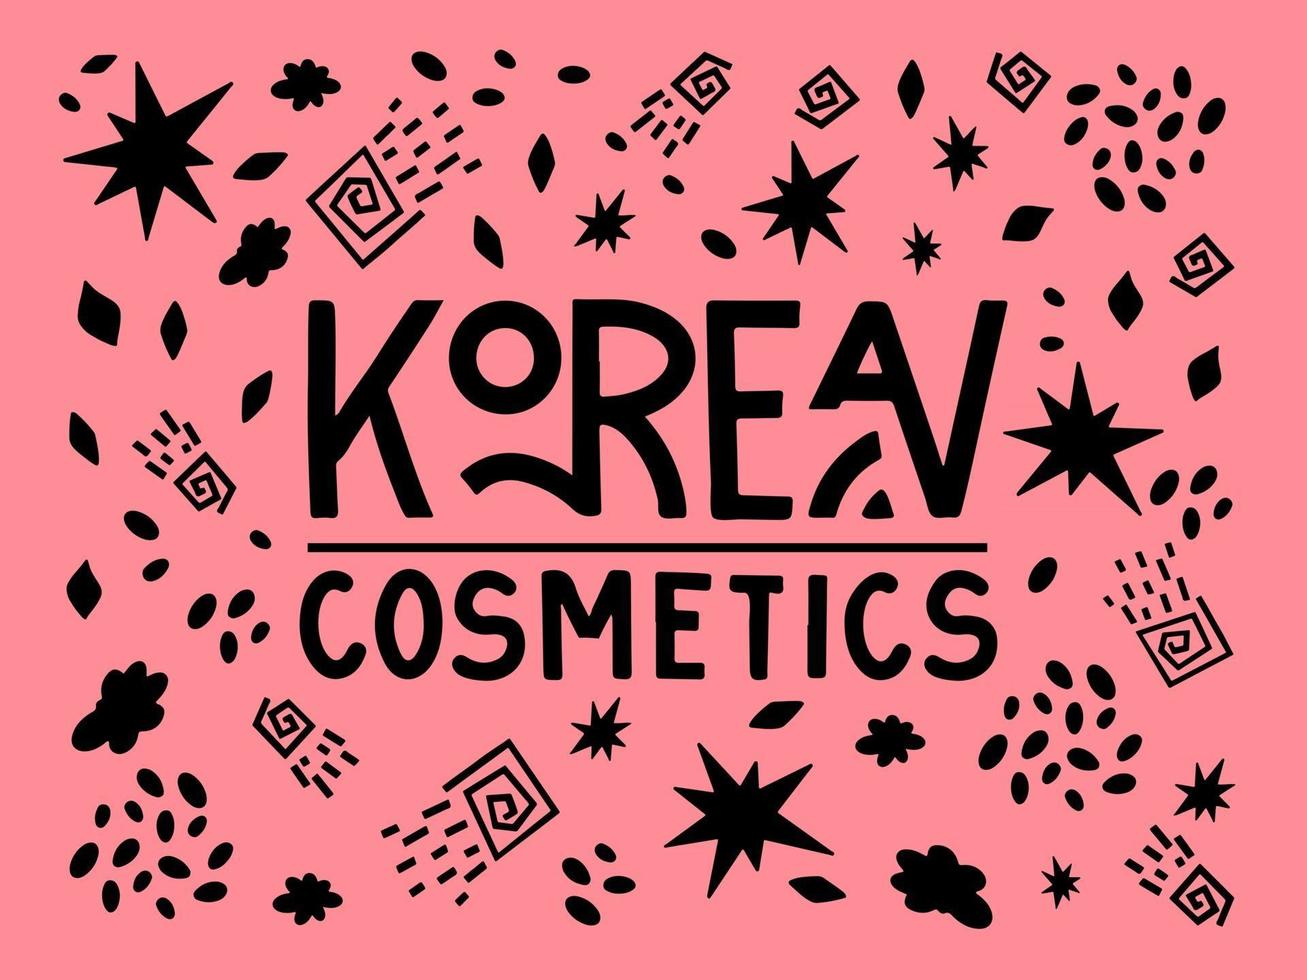 texte de lettrage de cosmétiques coréens avec des griffonnages sur fond rose. illustration vectorielle dans le style de dessin à la main vecteur